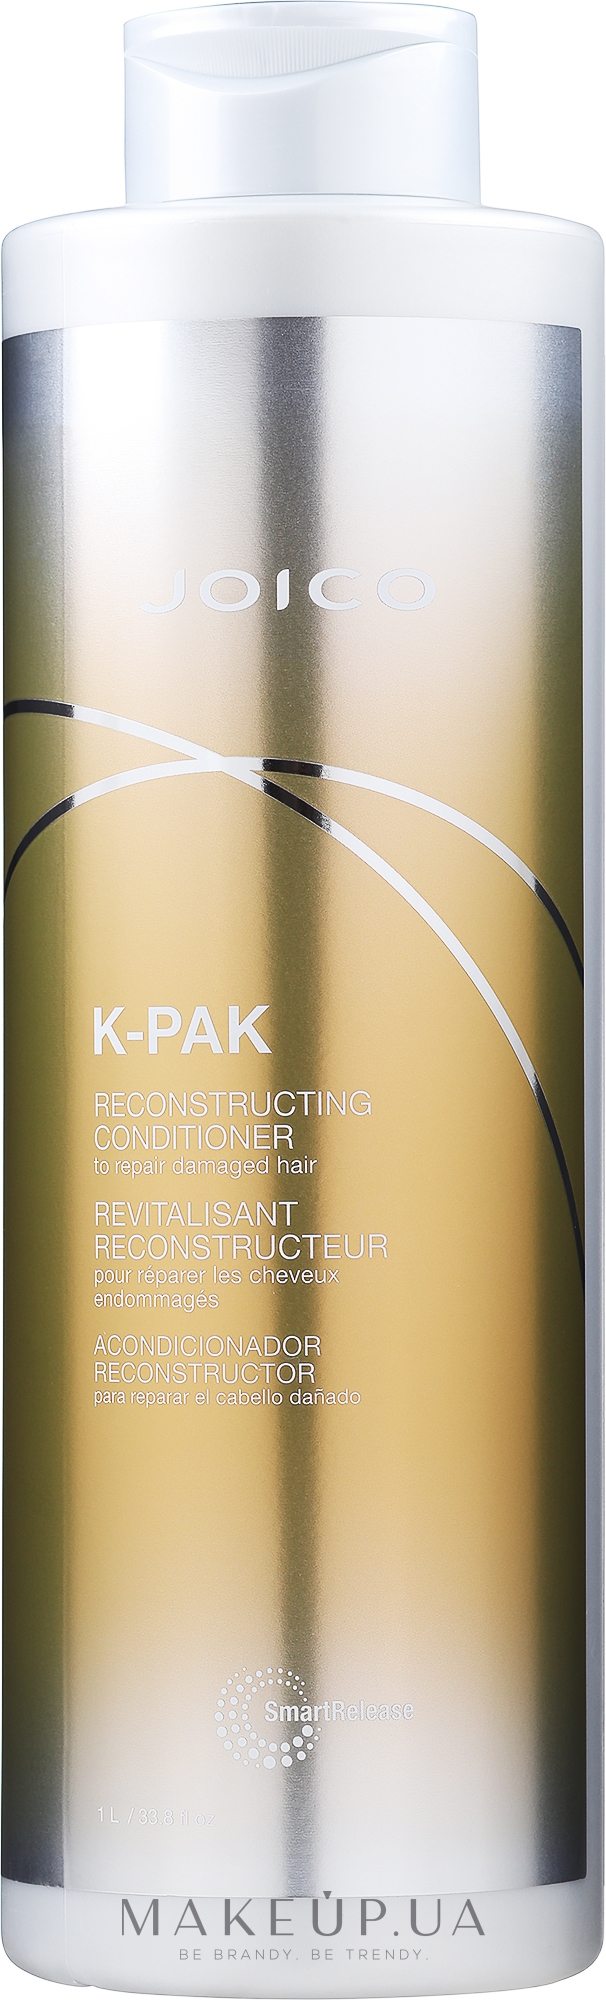 Кондиционер восстанавливающий для поврежденных волос - Joico K-Pak Reconstruct Conditioner — фото 1000ml